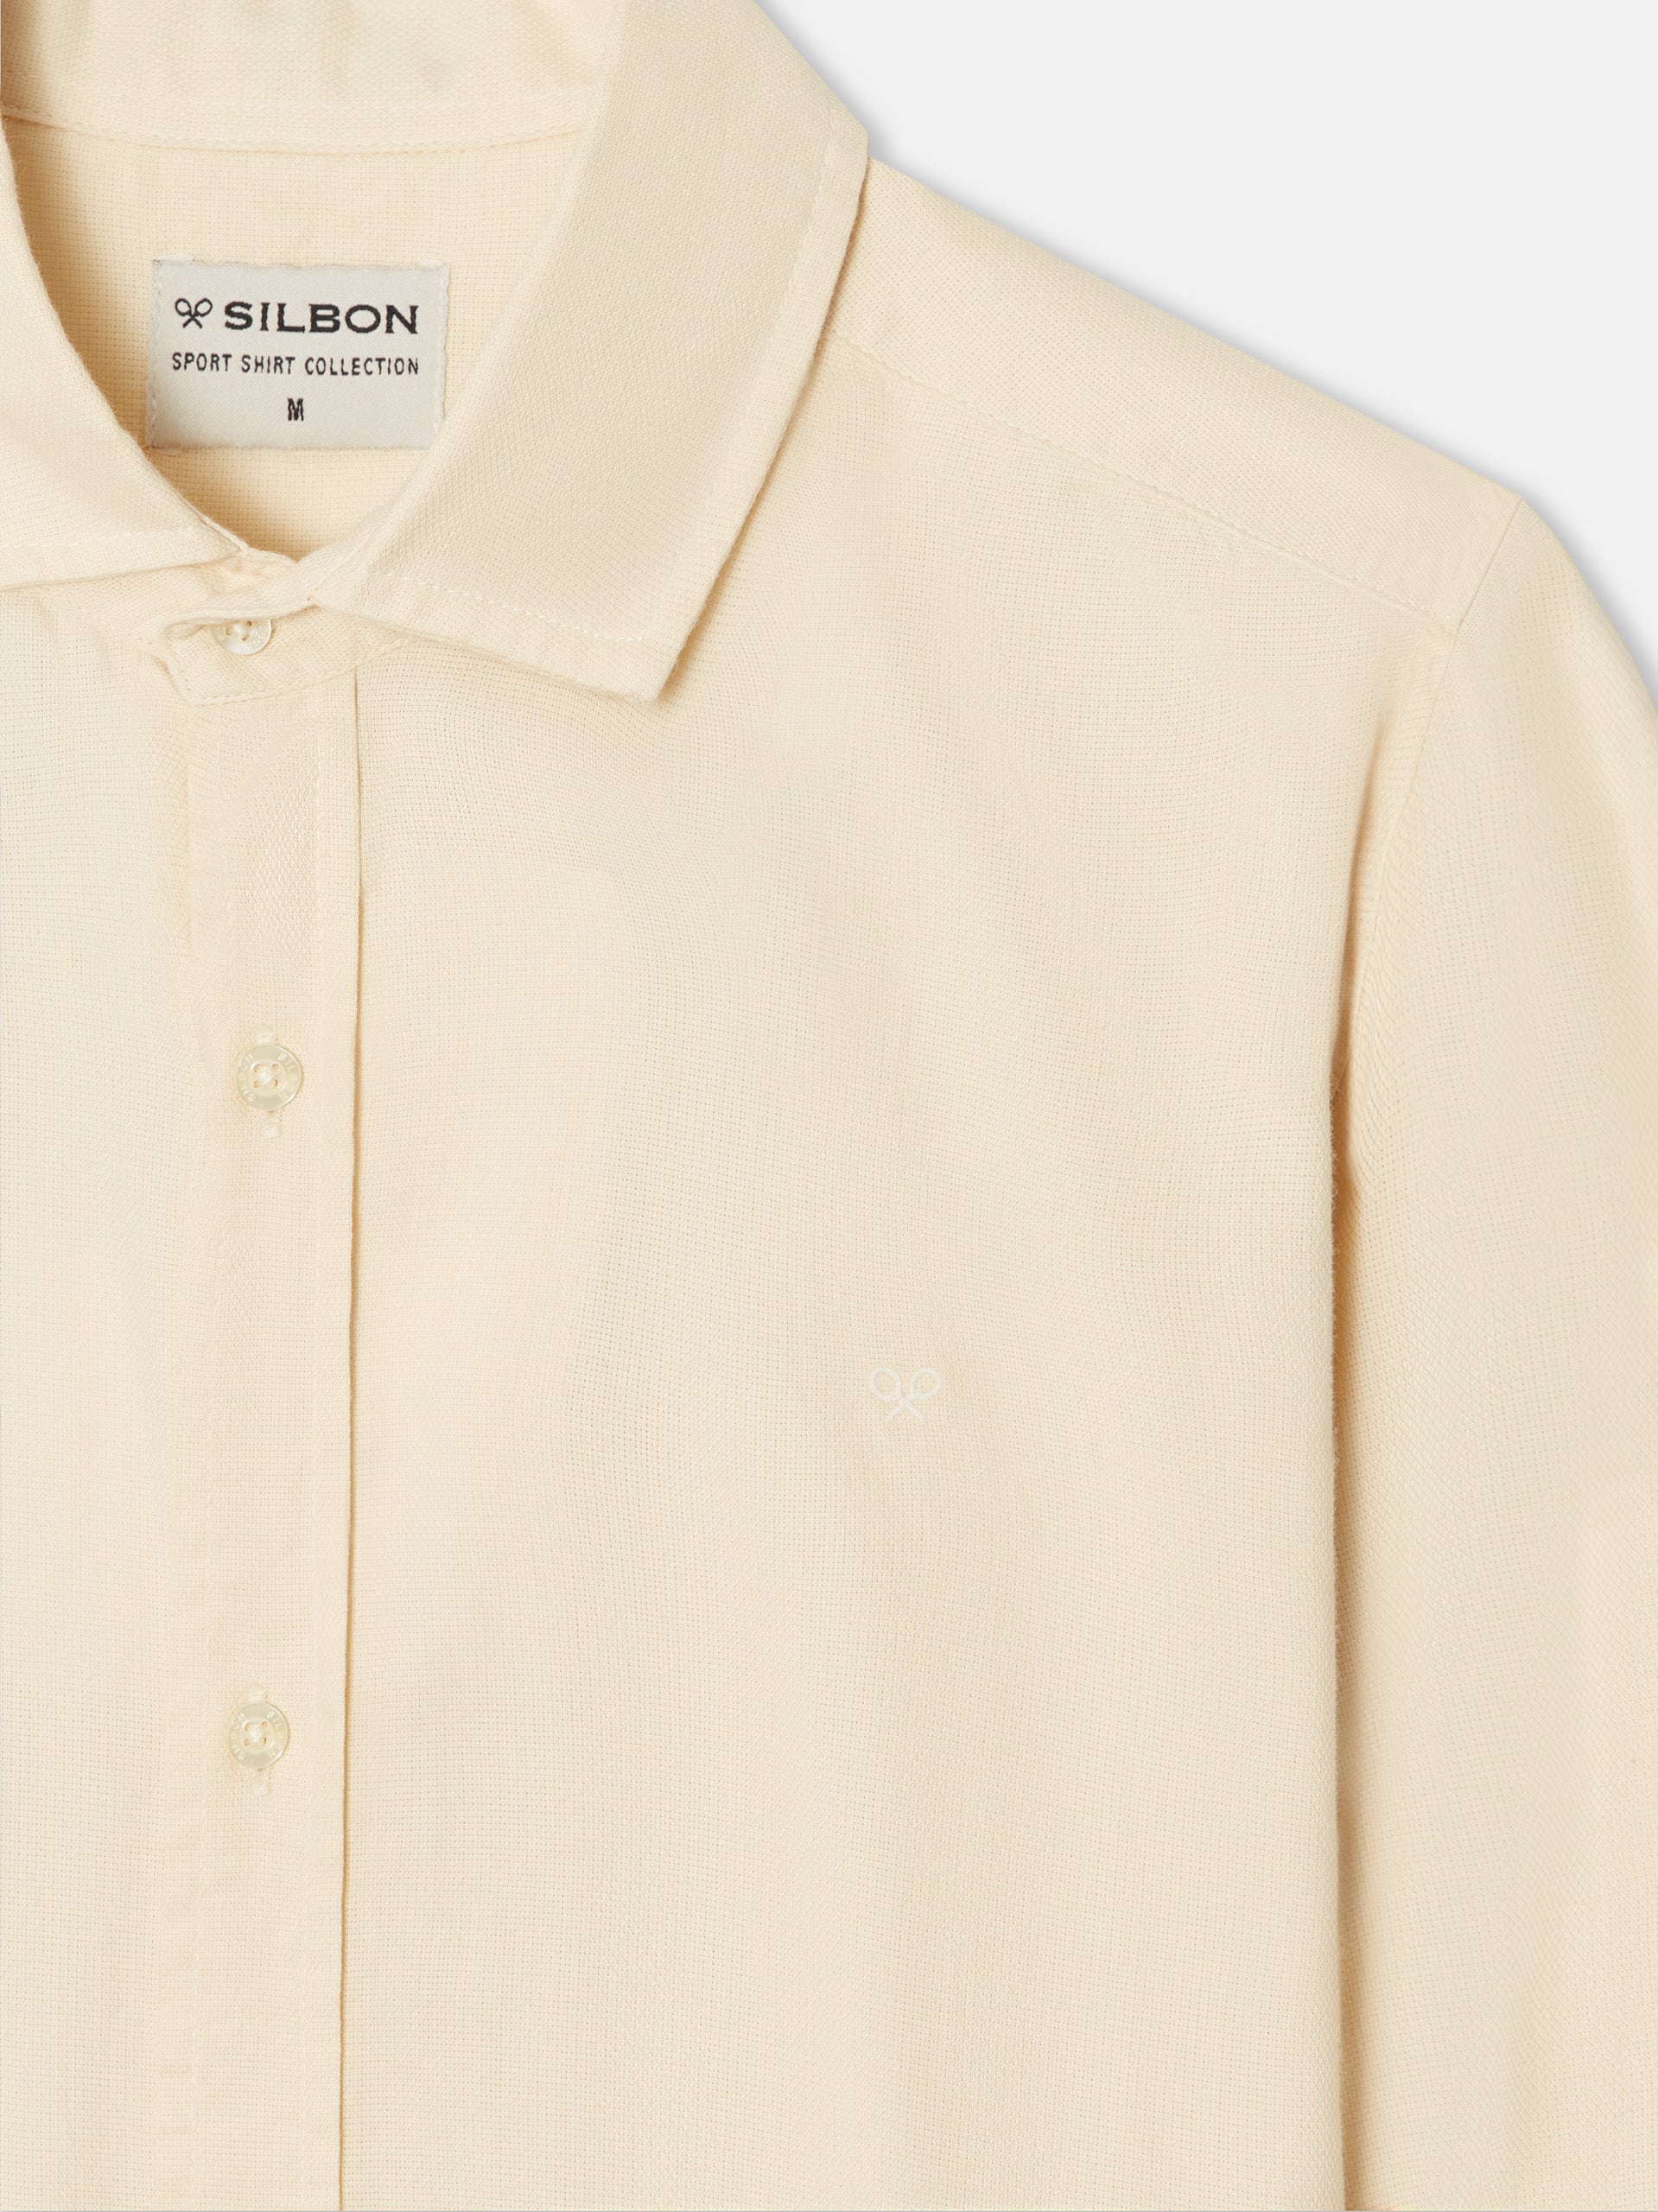 Camisa sport silbon light structure beige claro